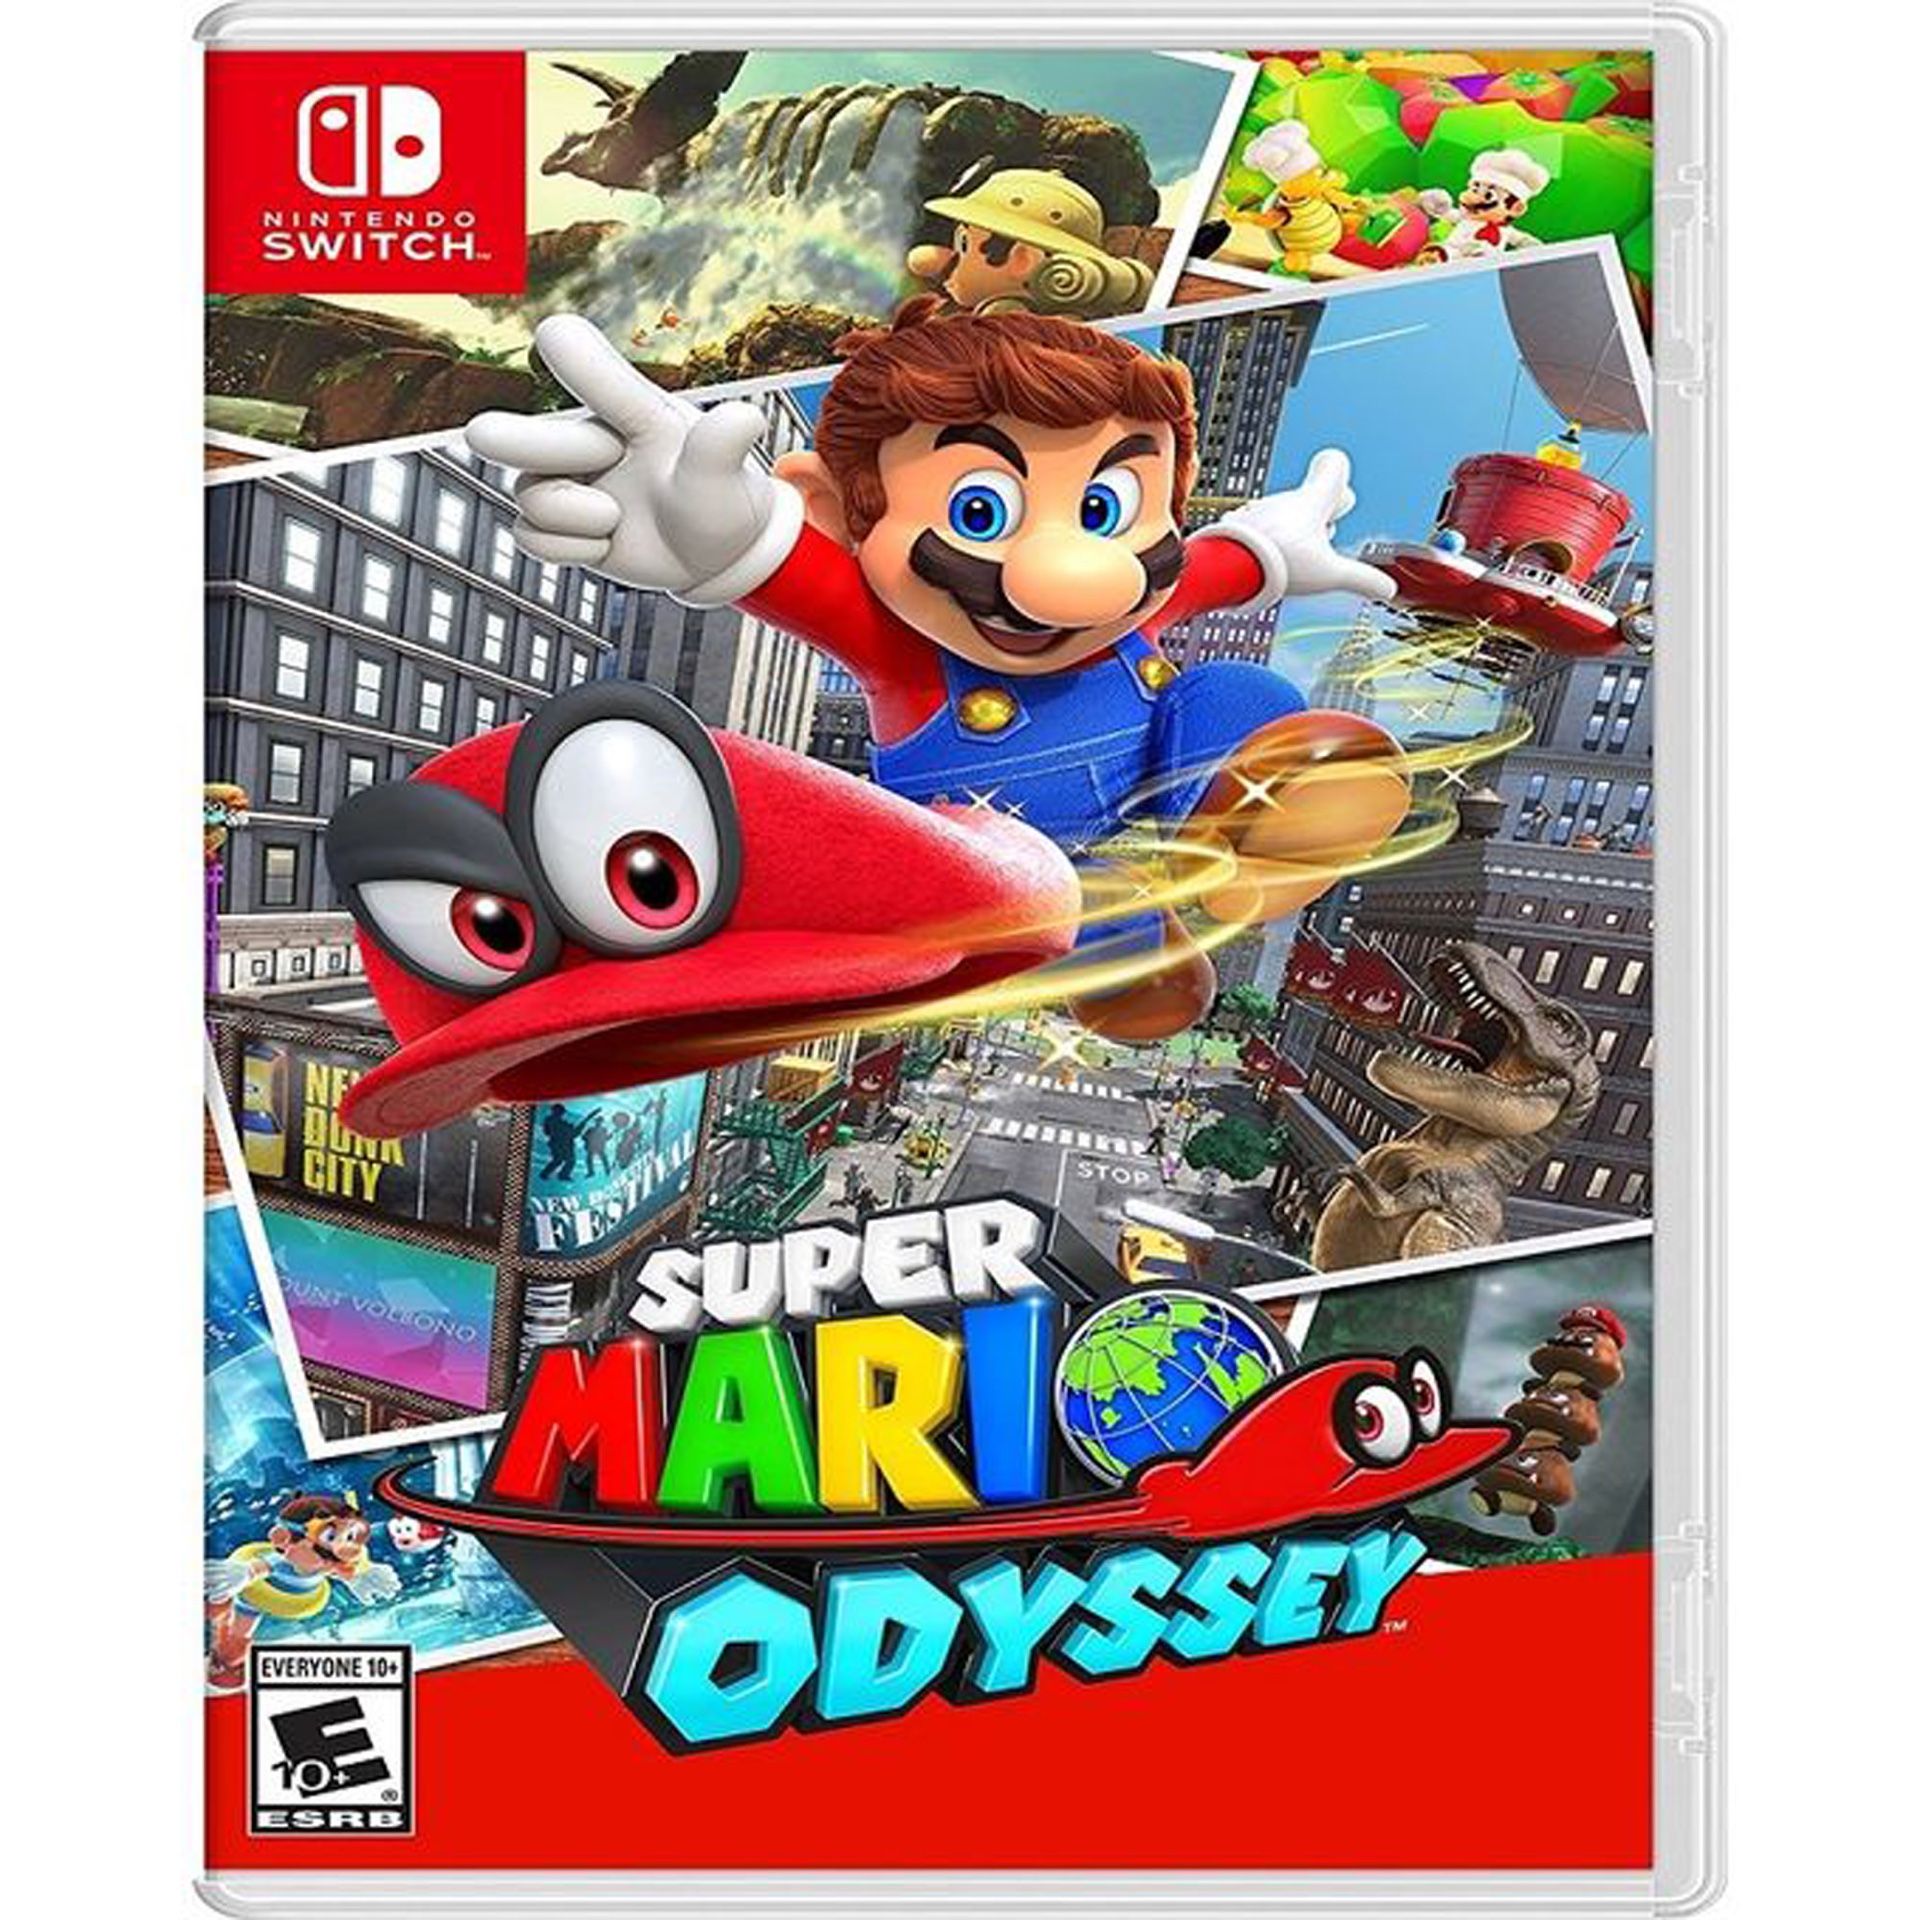 Super Mario odyssey game